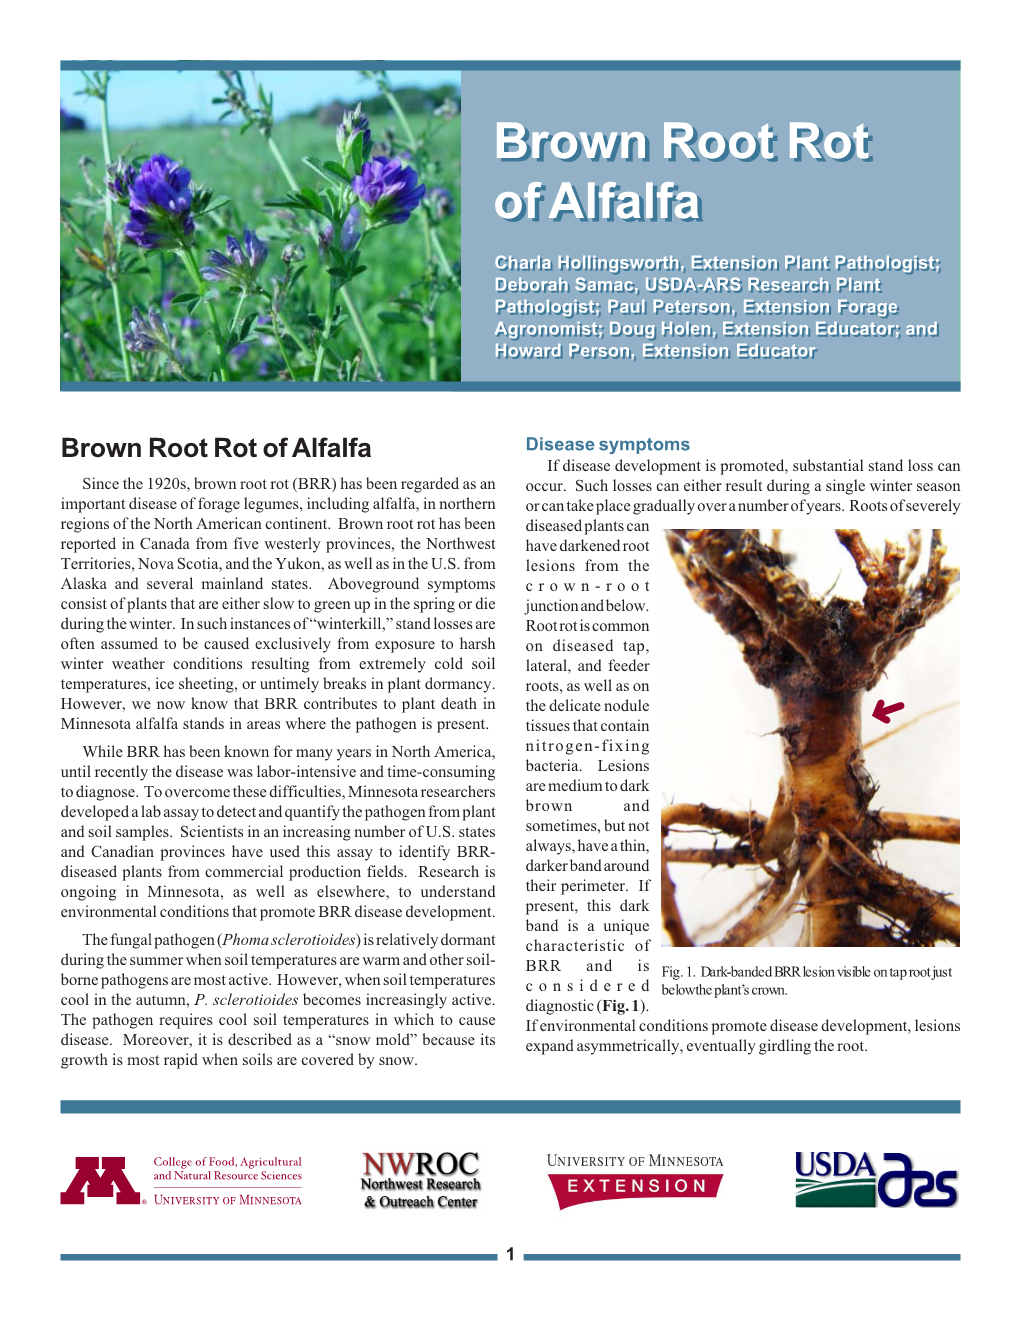 Brown Root Rot of Alfalfa